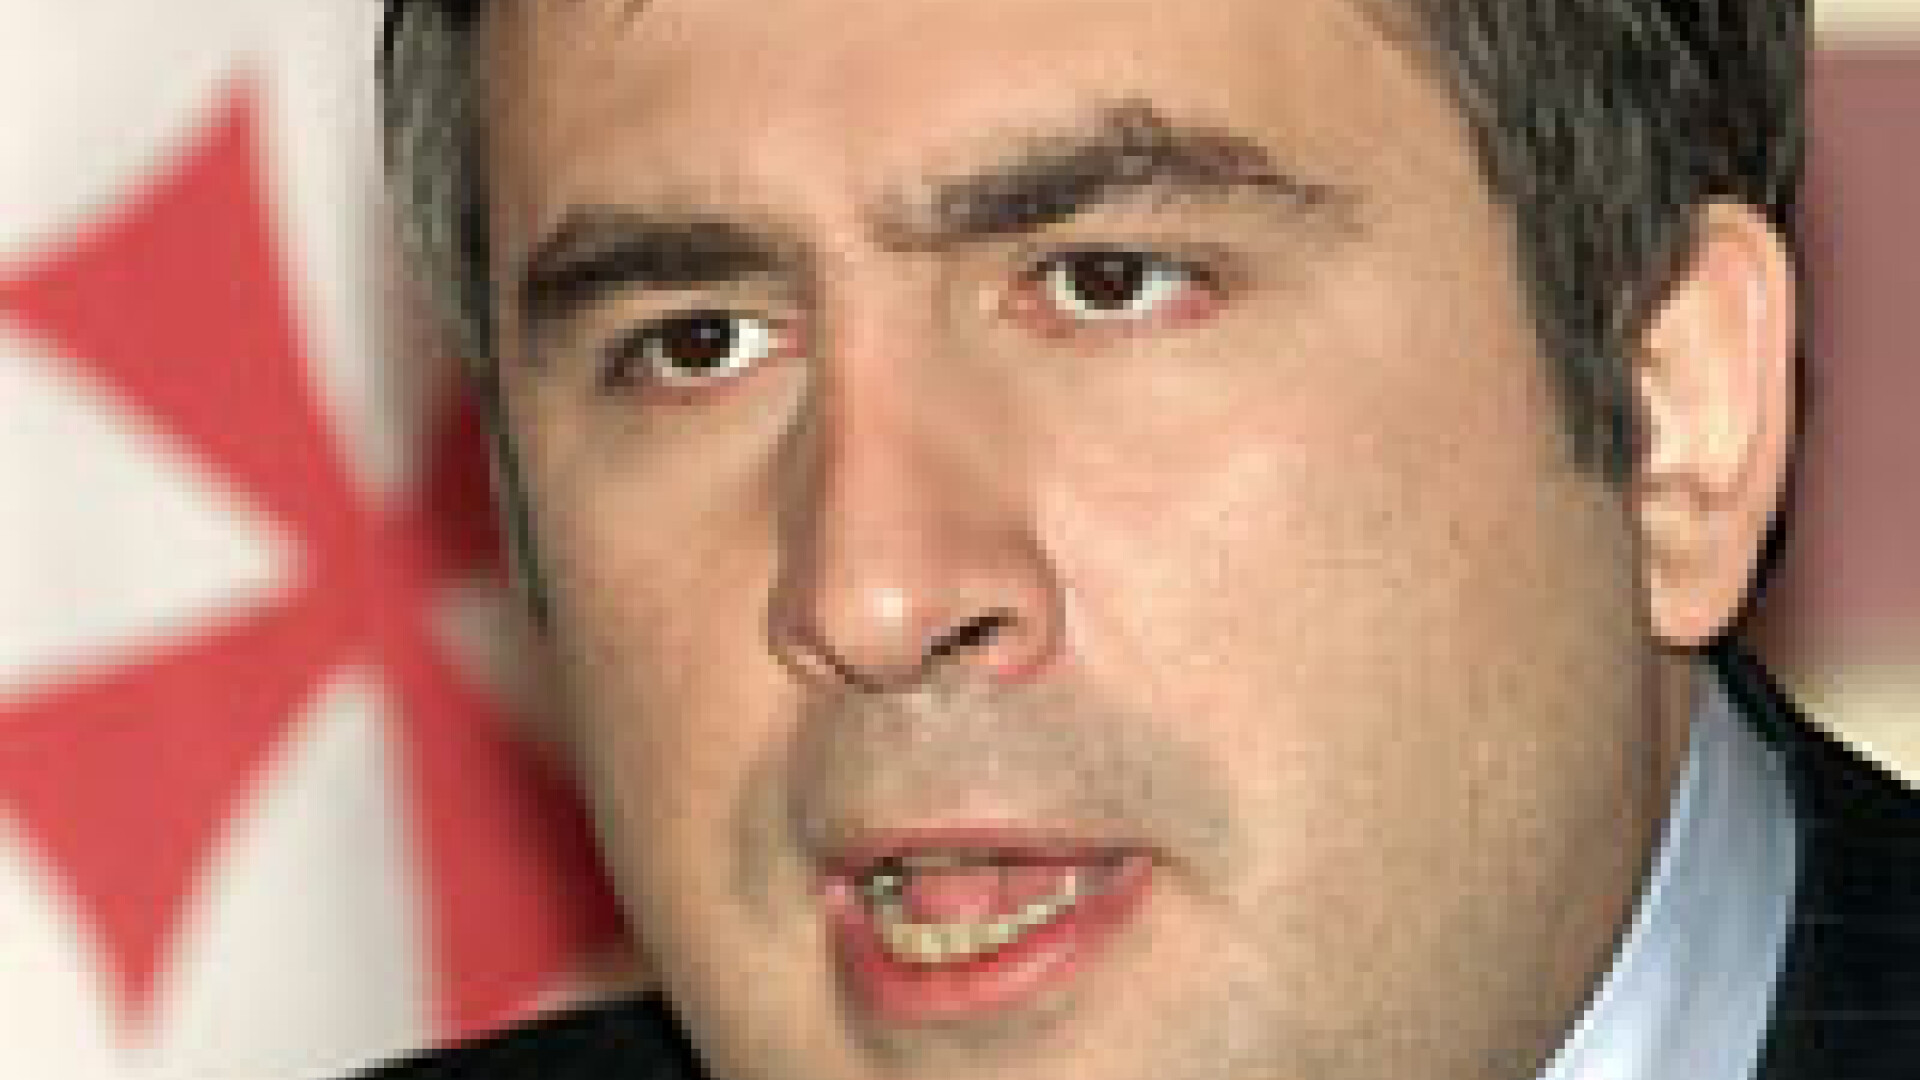 Mihail Saakasvili